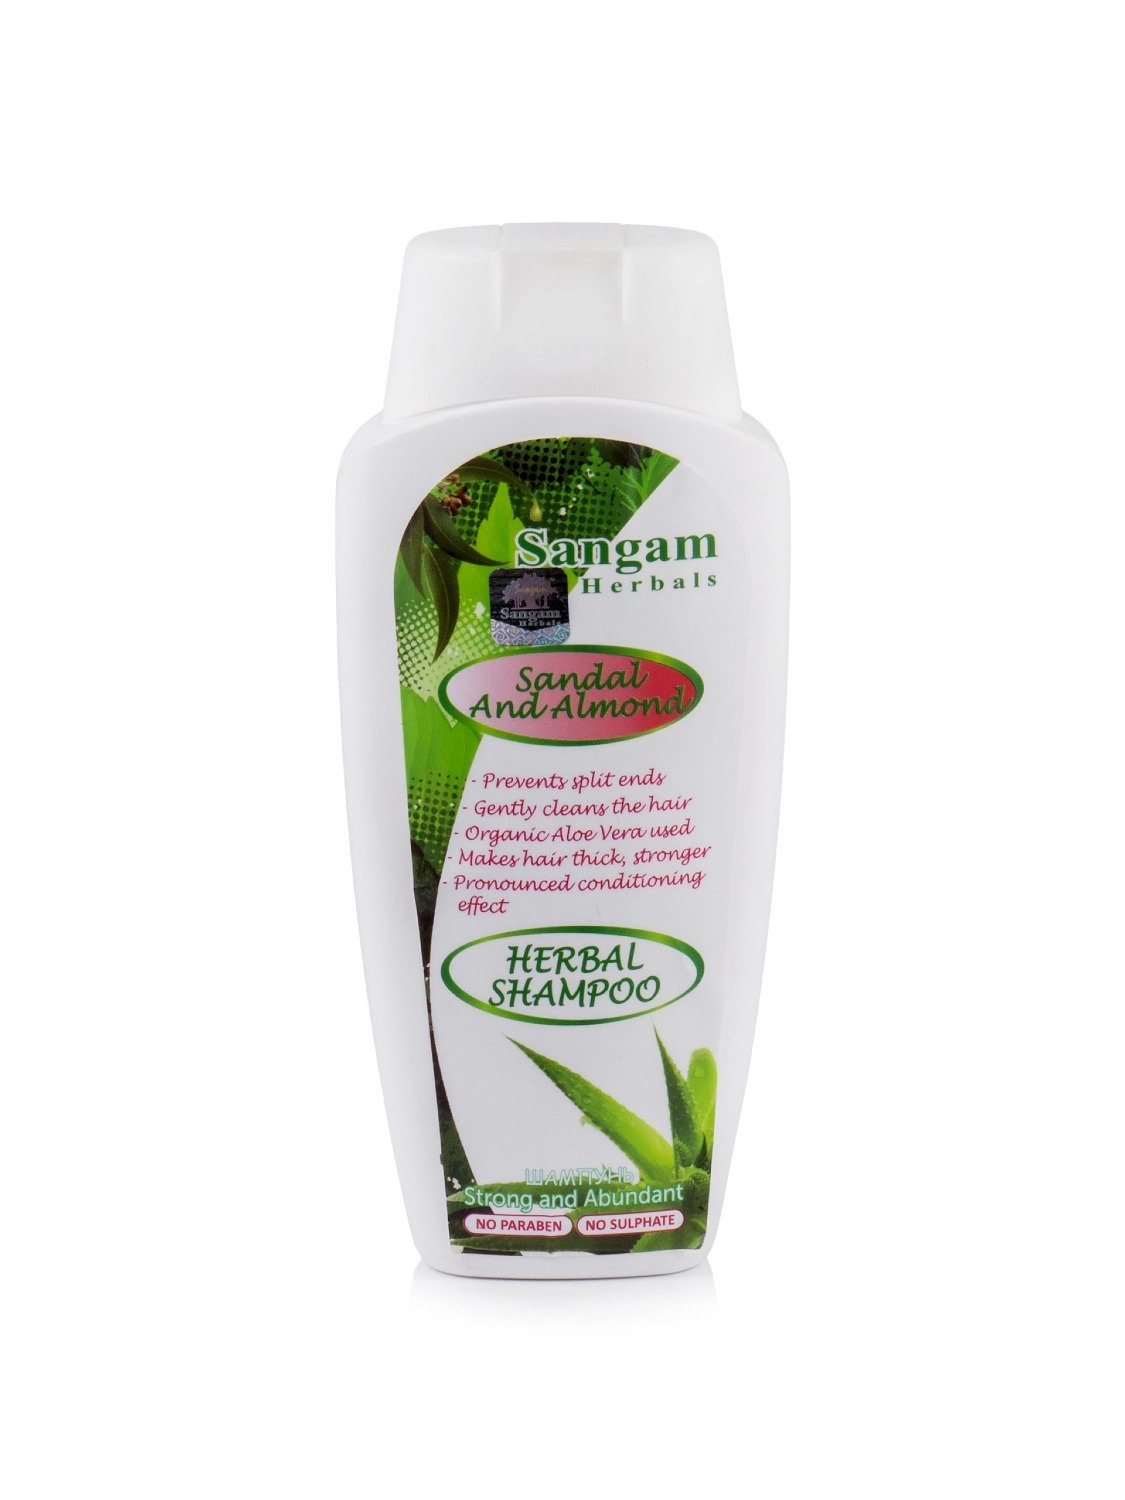 Купить Шампунь для волос Sangam Herbals (Sandal and Almond) в интернет-магазине #store#